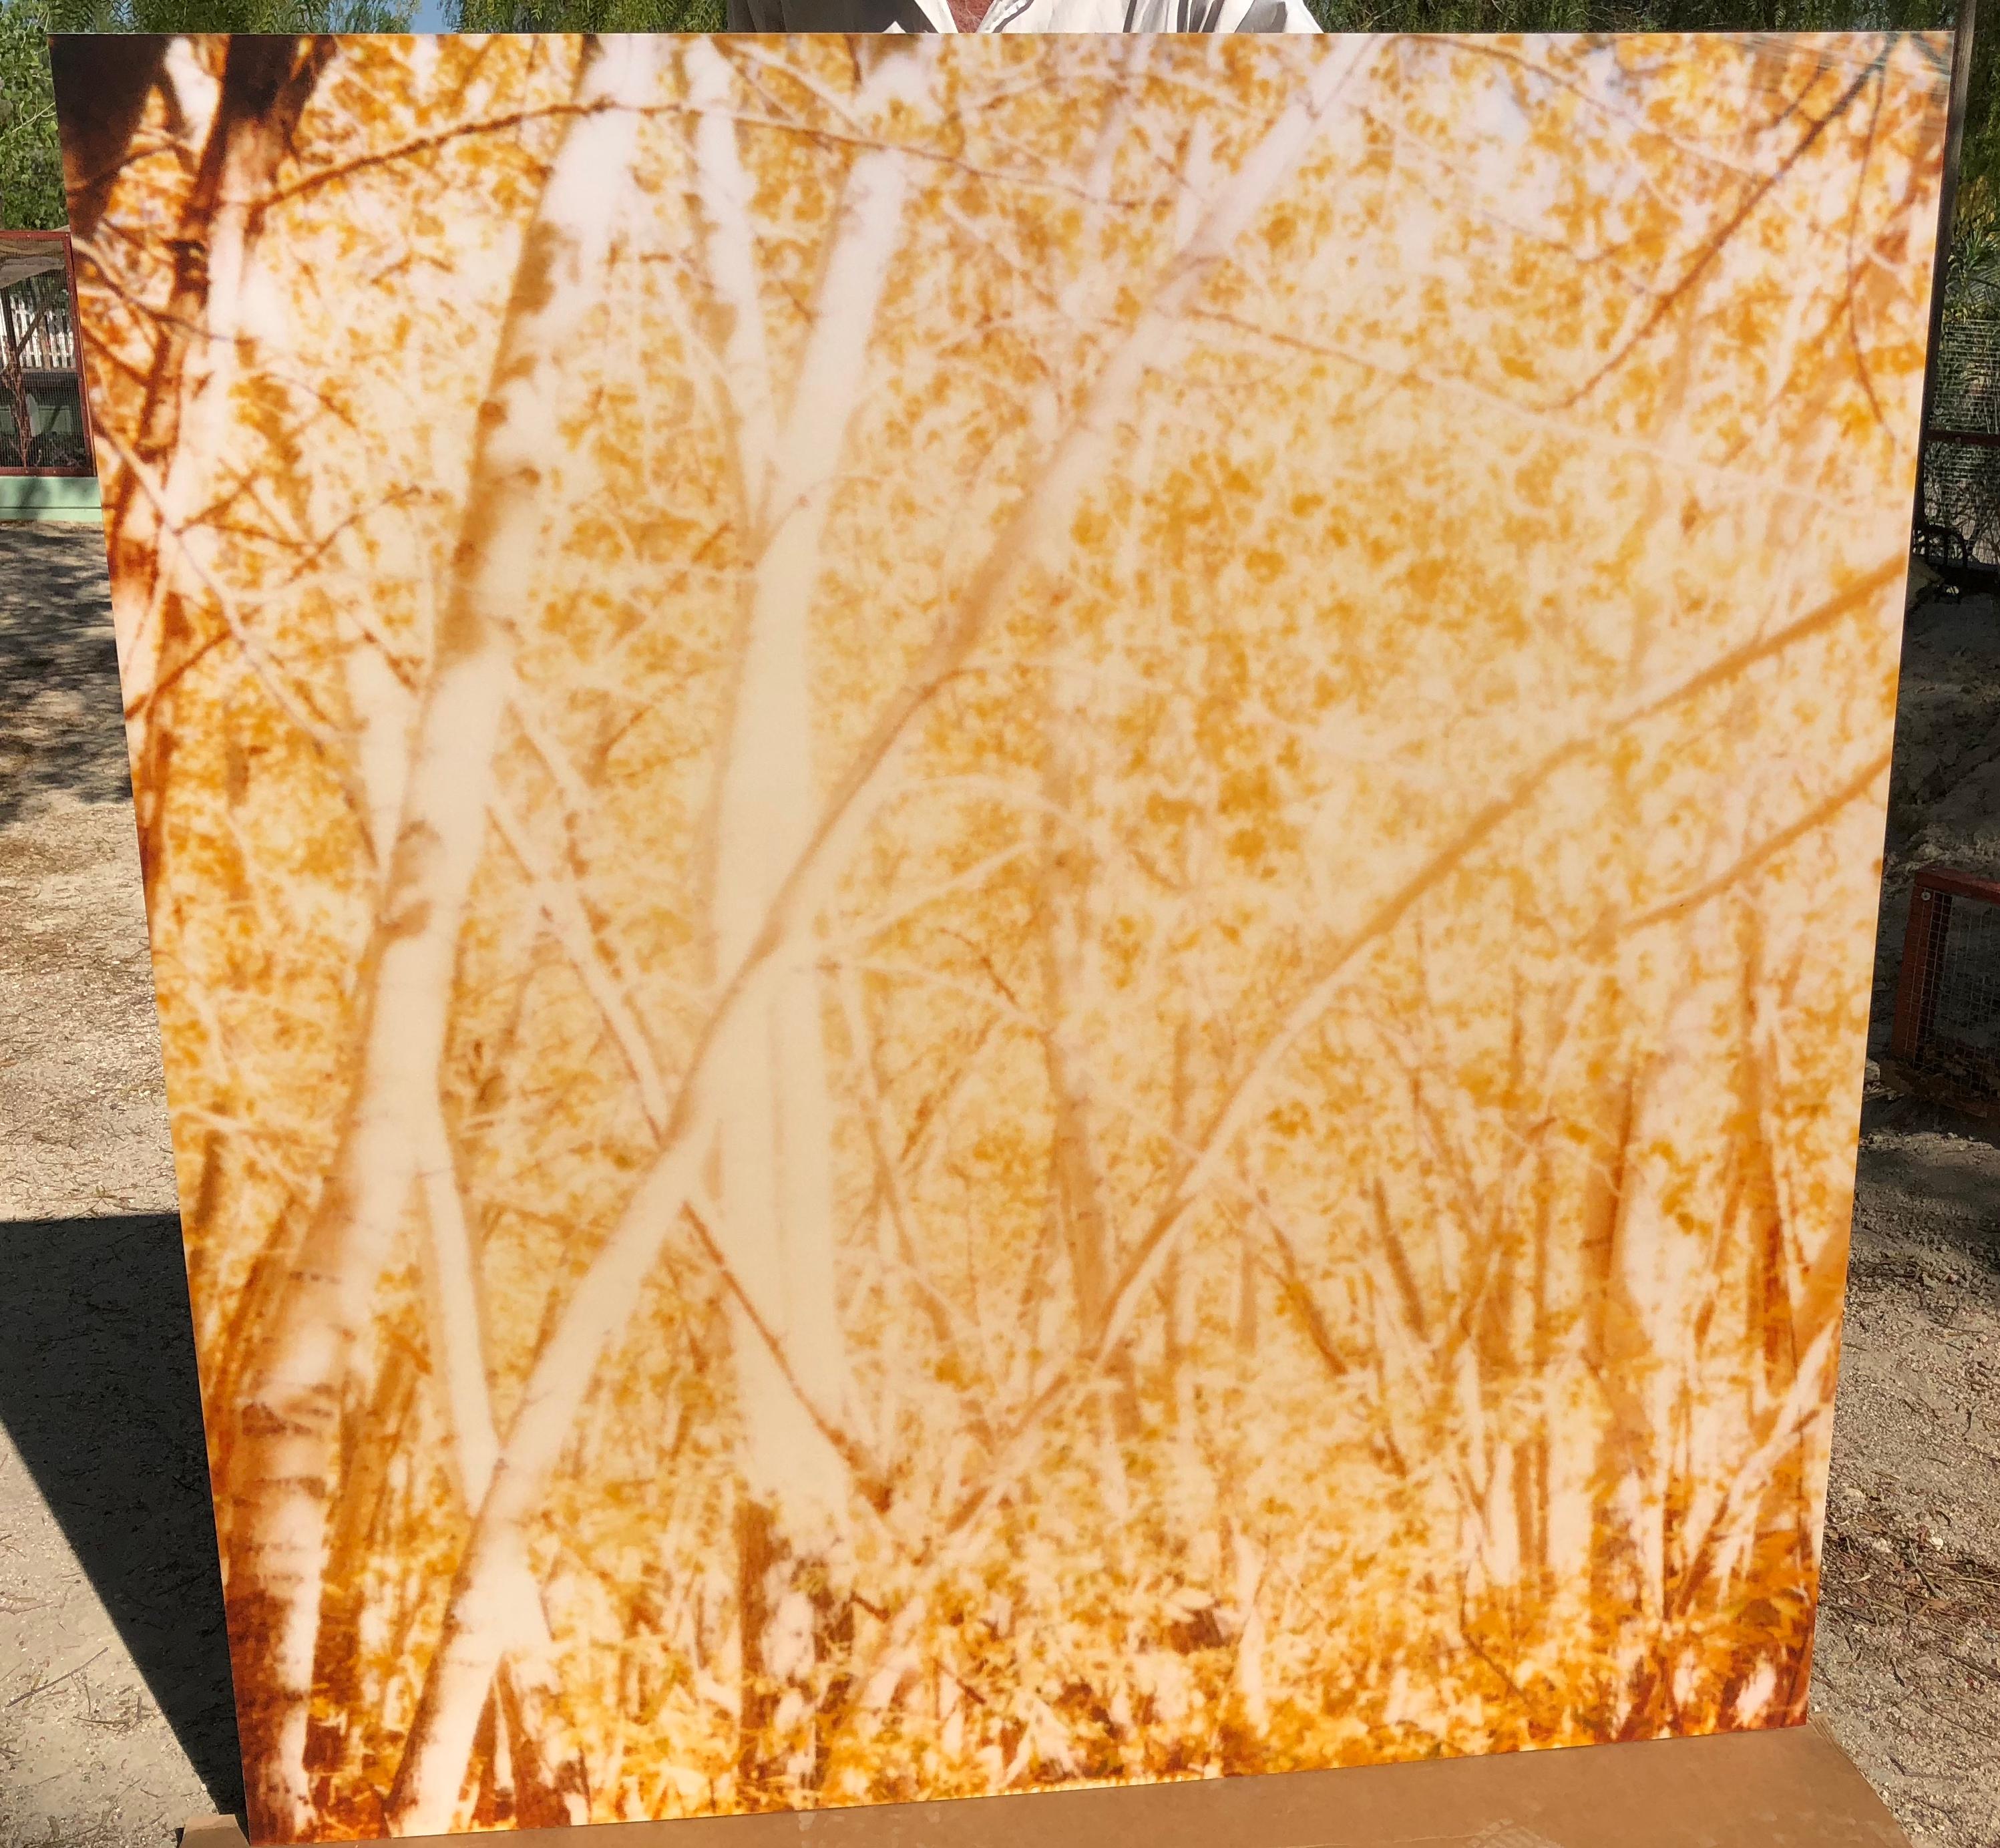 Indian Summer II (The Last Picture Show) - 2005,

128x125cm, 
Auflage 1/5, 
analoger C-Print, handgedruckt vom Künstler auf Fuji Crystal Archive Papier, 
basierend auf dem Polaroid, montiert auf Aluminium mit mattem UV-Schutz. 
Künstlerinventar